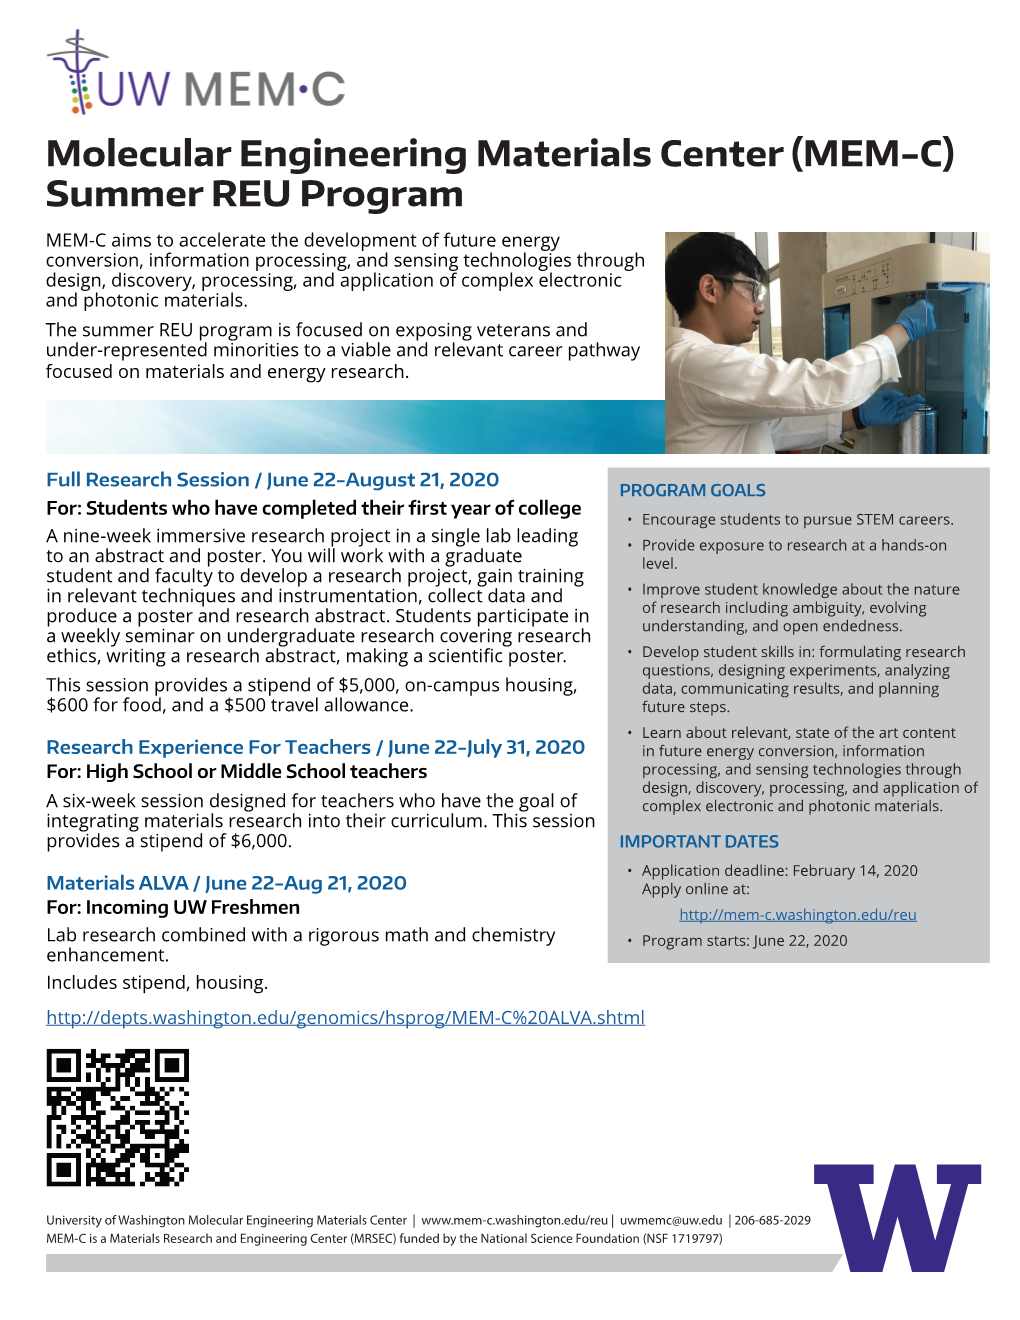 Molecular Engineering Materials Center (MEM-C) Summer REU Program